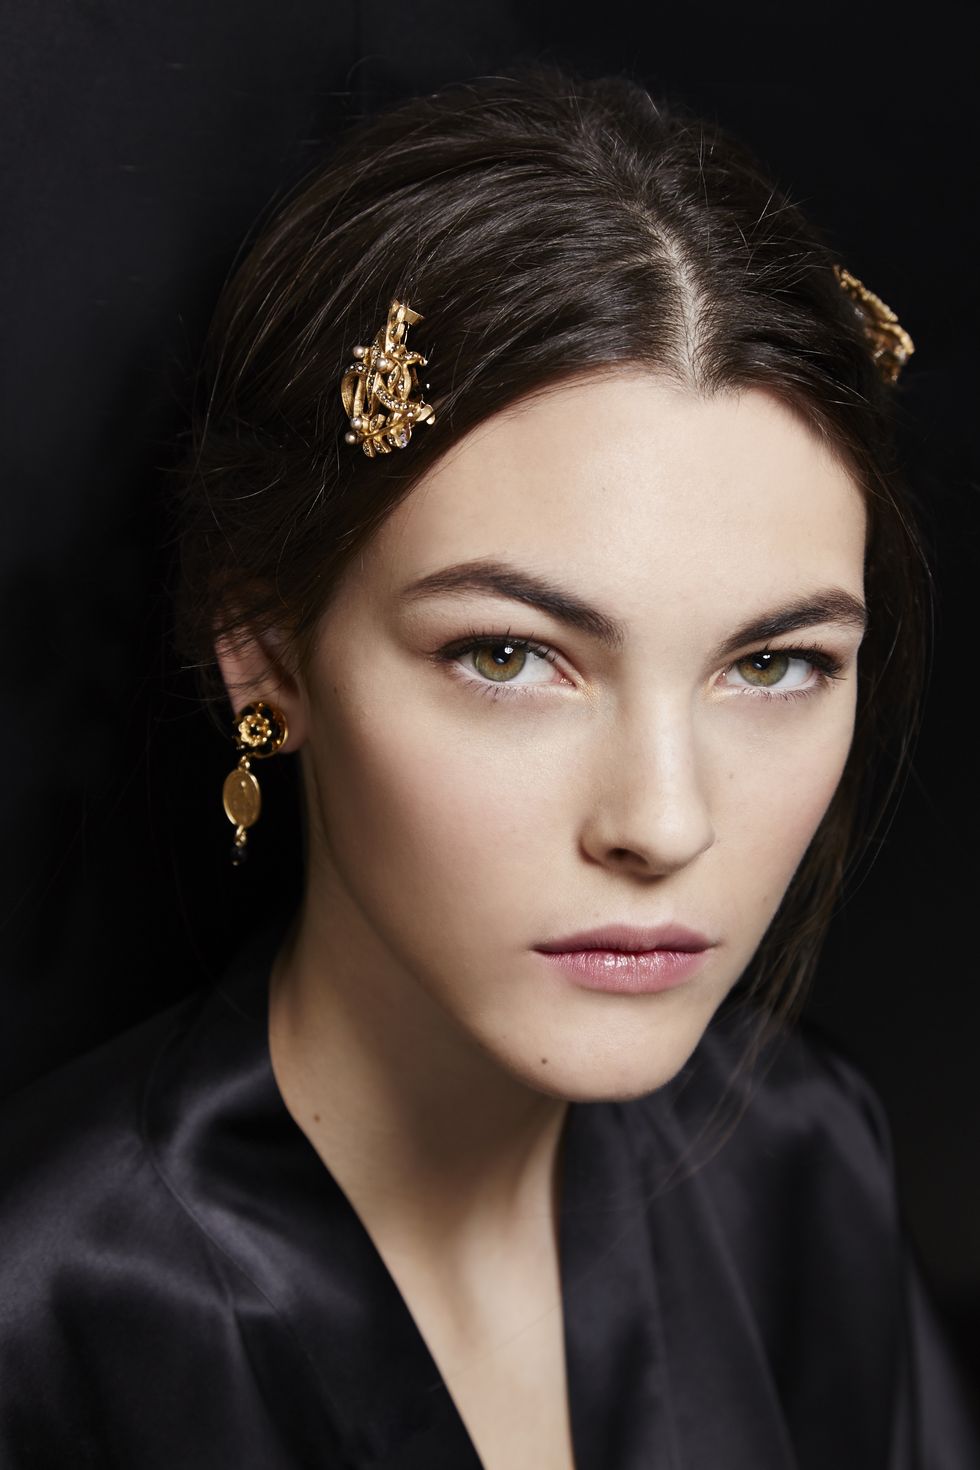 Dolce & Gabbana - Autumn/Winter 2015 beauty trends 